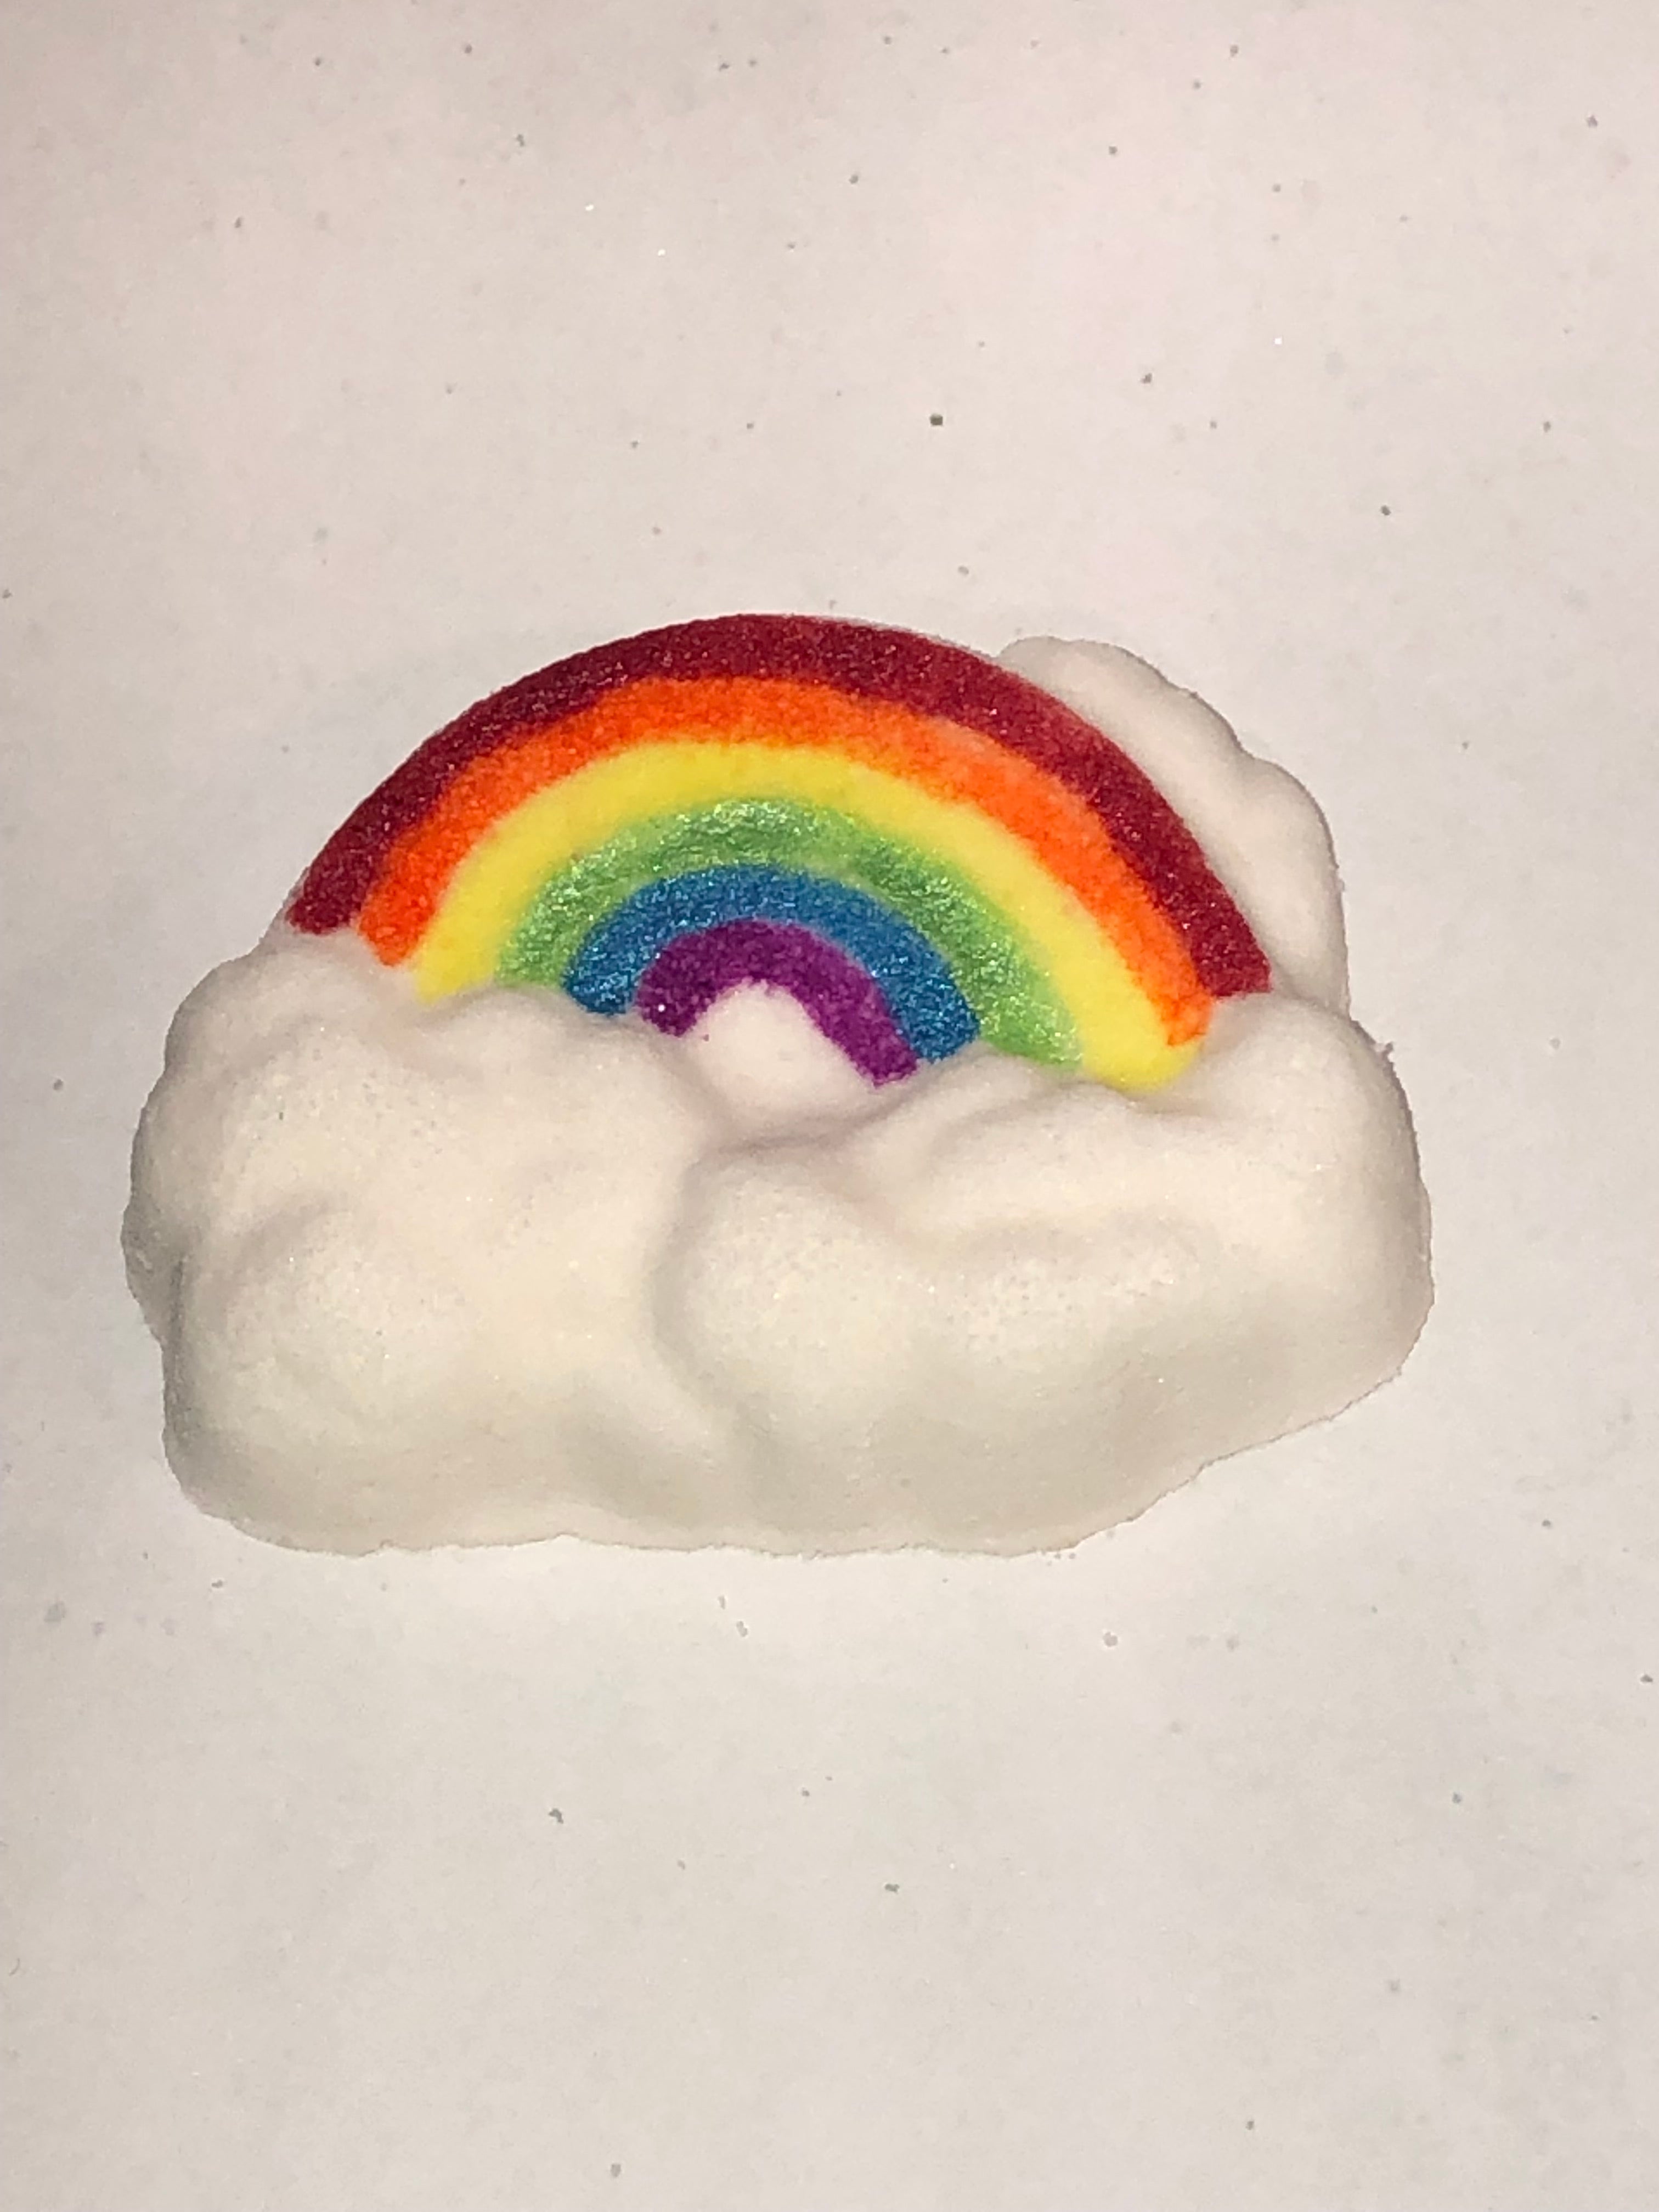 Bath Bomb XL Hand Painted Rainbow on Cloud